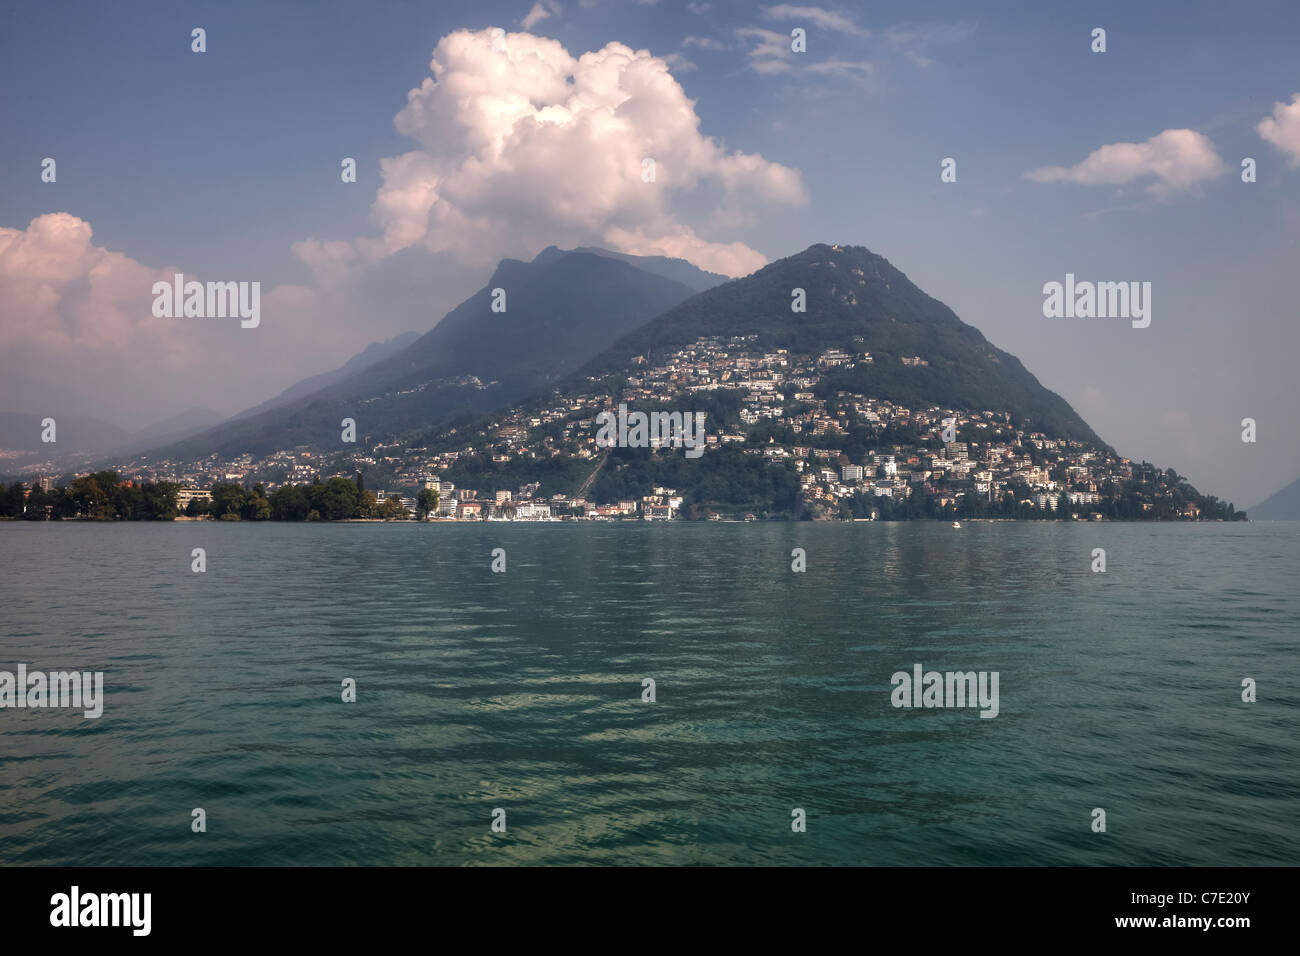 Monte Bre at Lago di Lugano Stock Photo